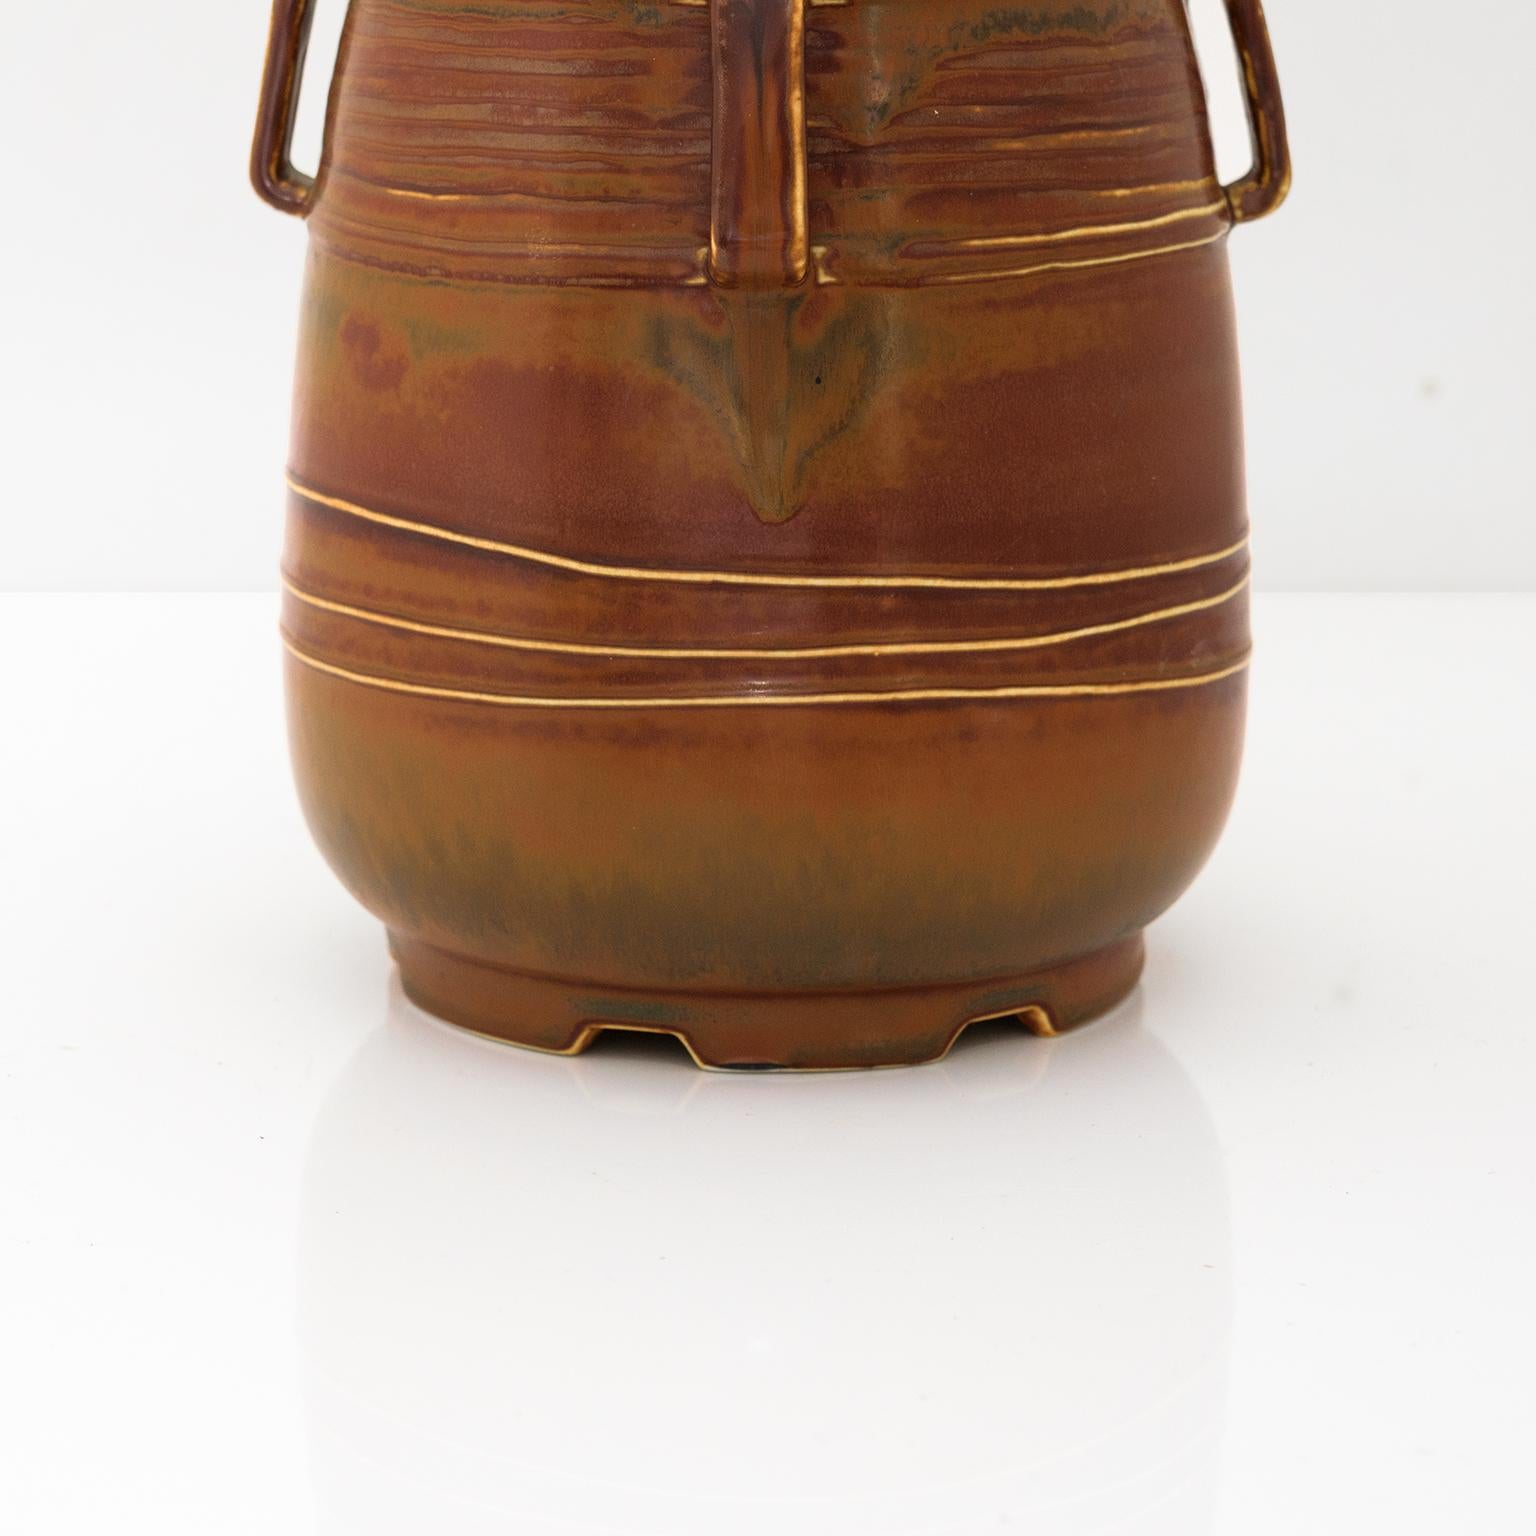 Clay Ebbe Sadolin Scandinavian Modern Vase, Bing & Gröndahl, Denmark, C. 1940s For Sale